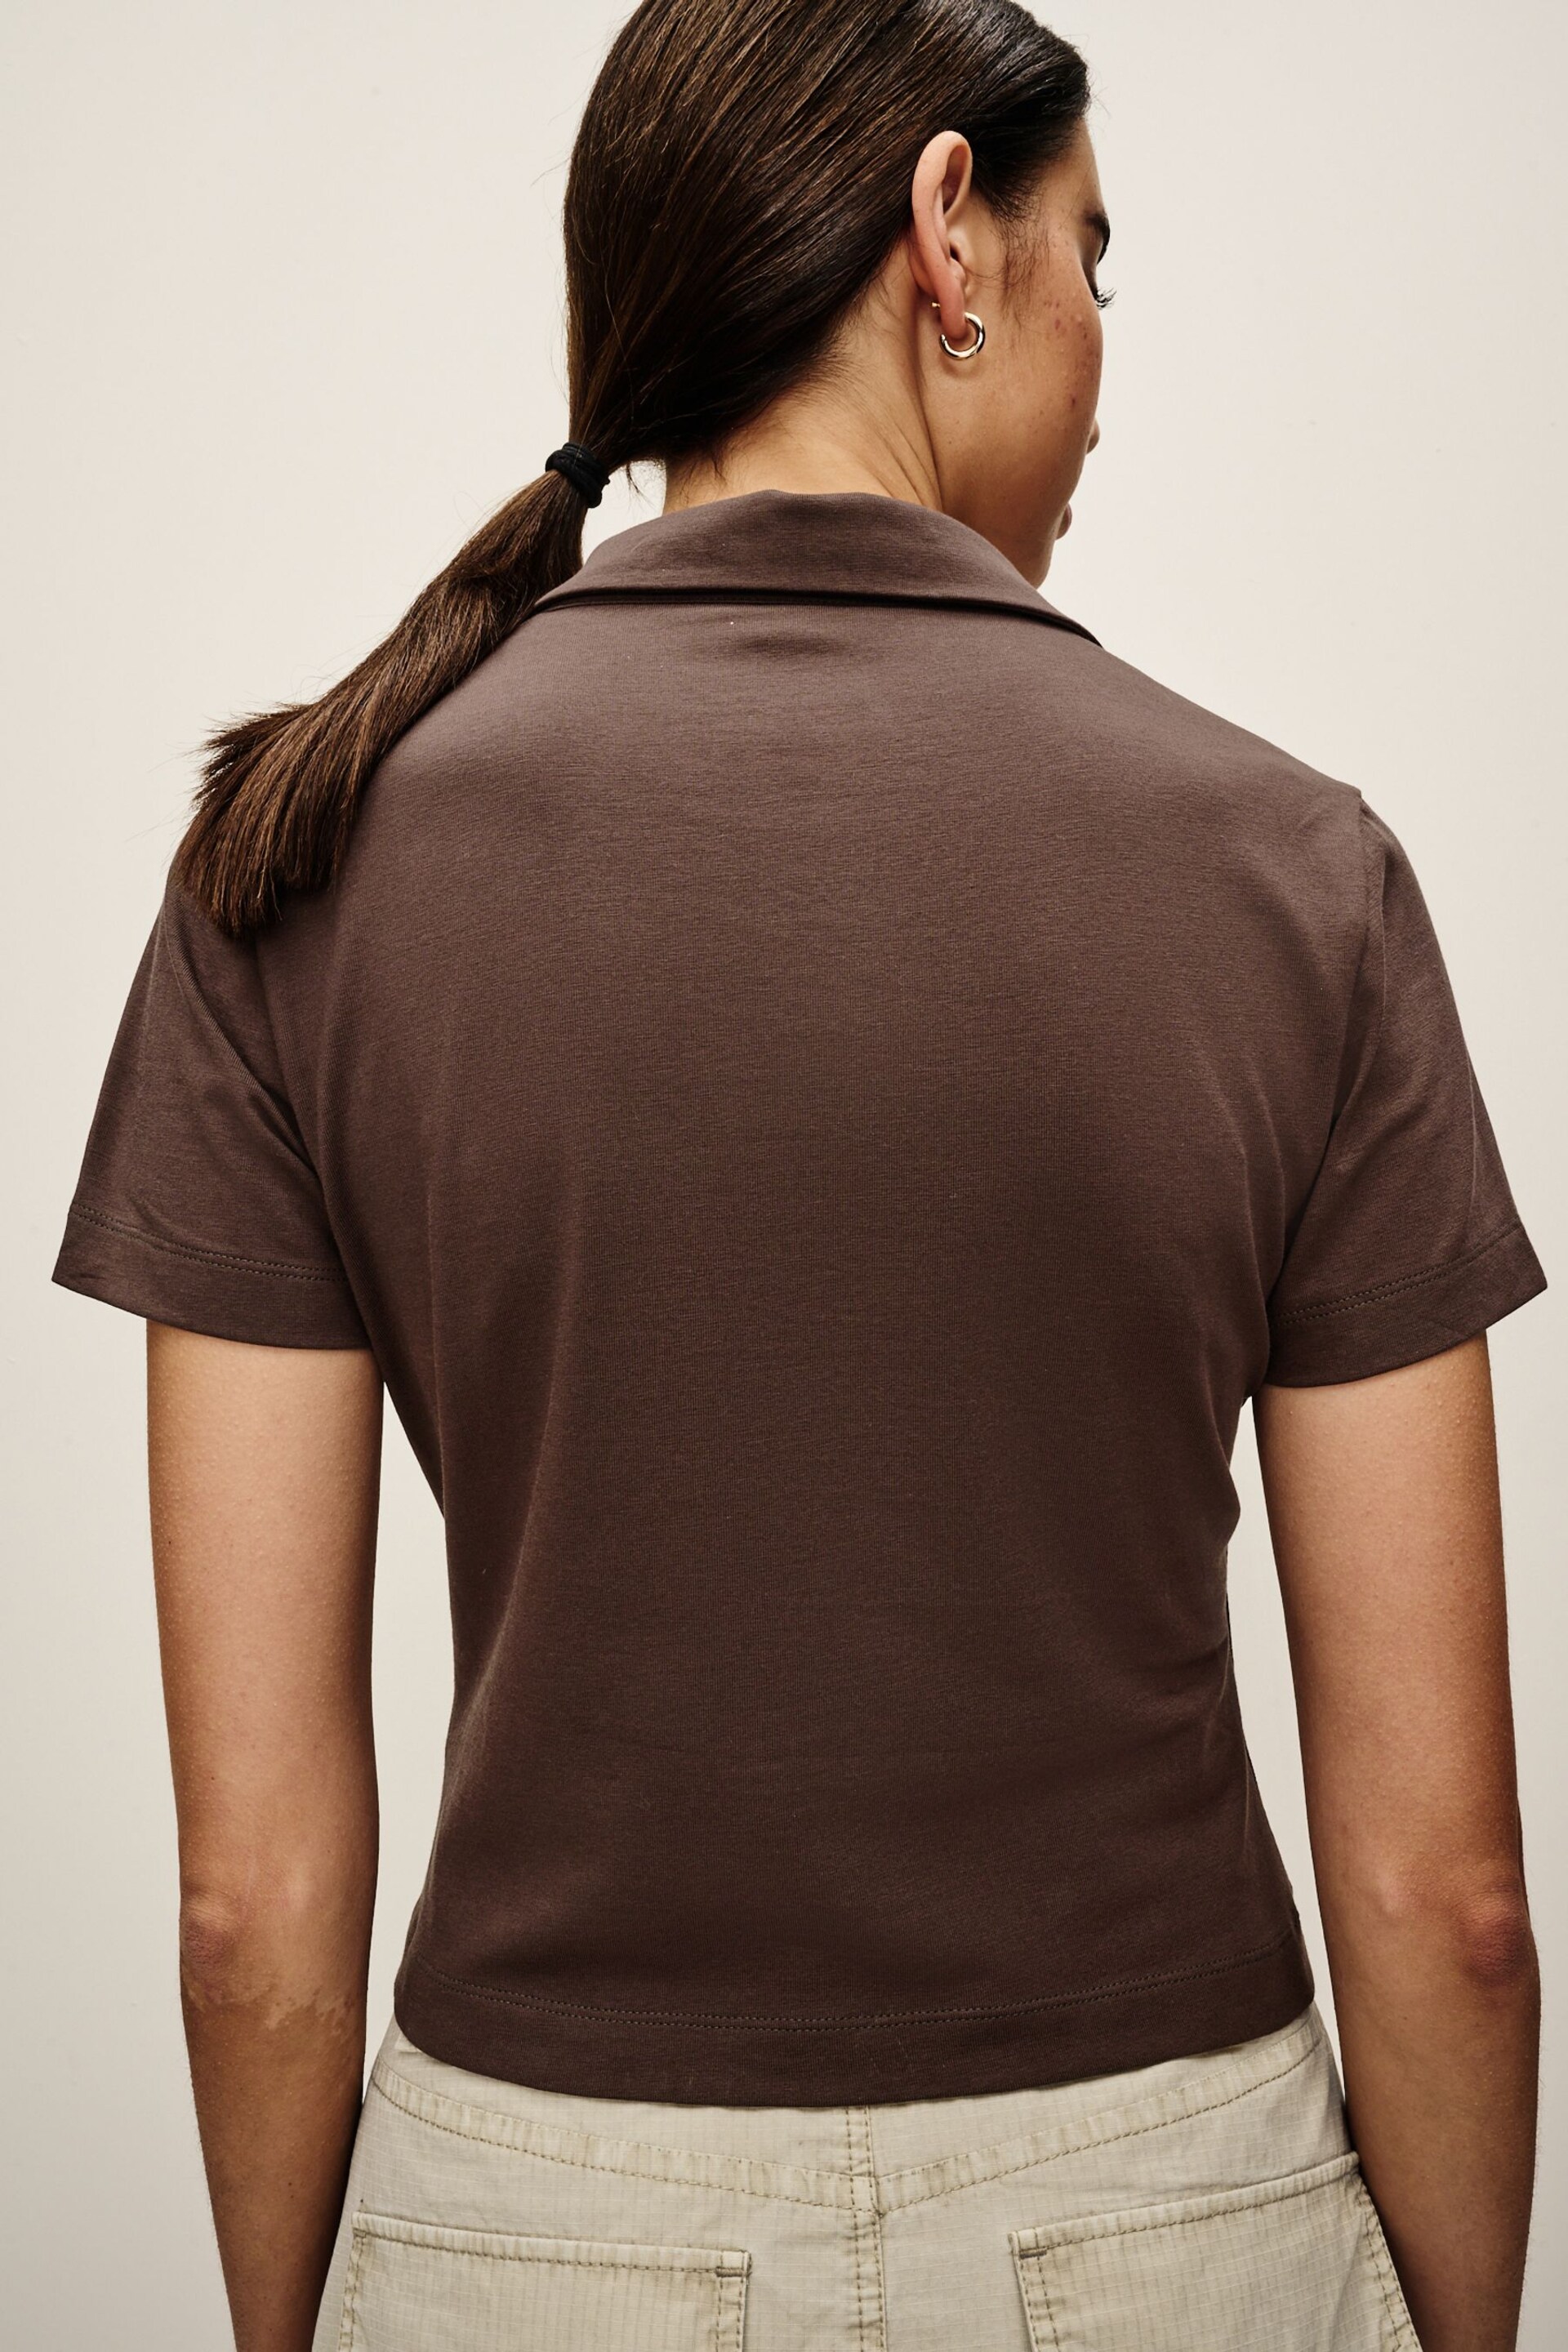 Chocolate Brown Polo Shirt - Image 4 of 7